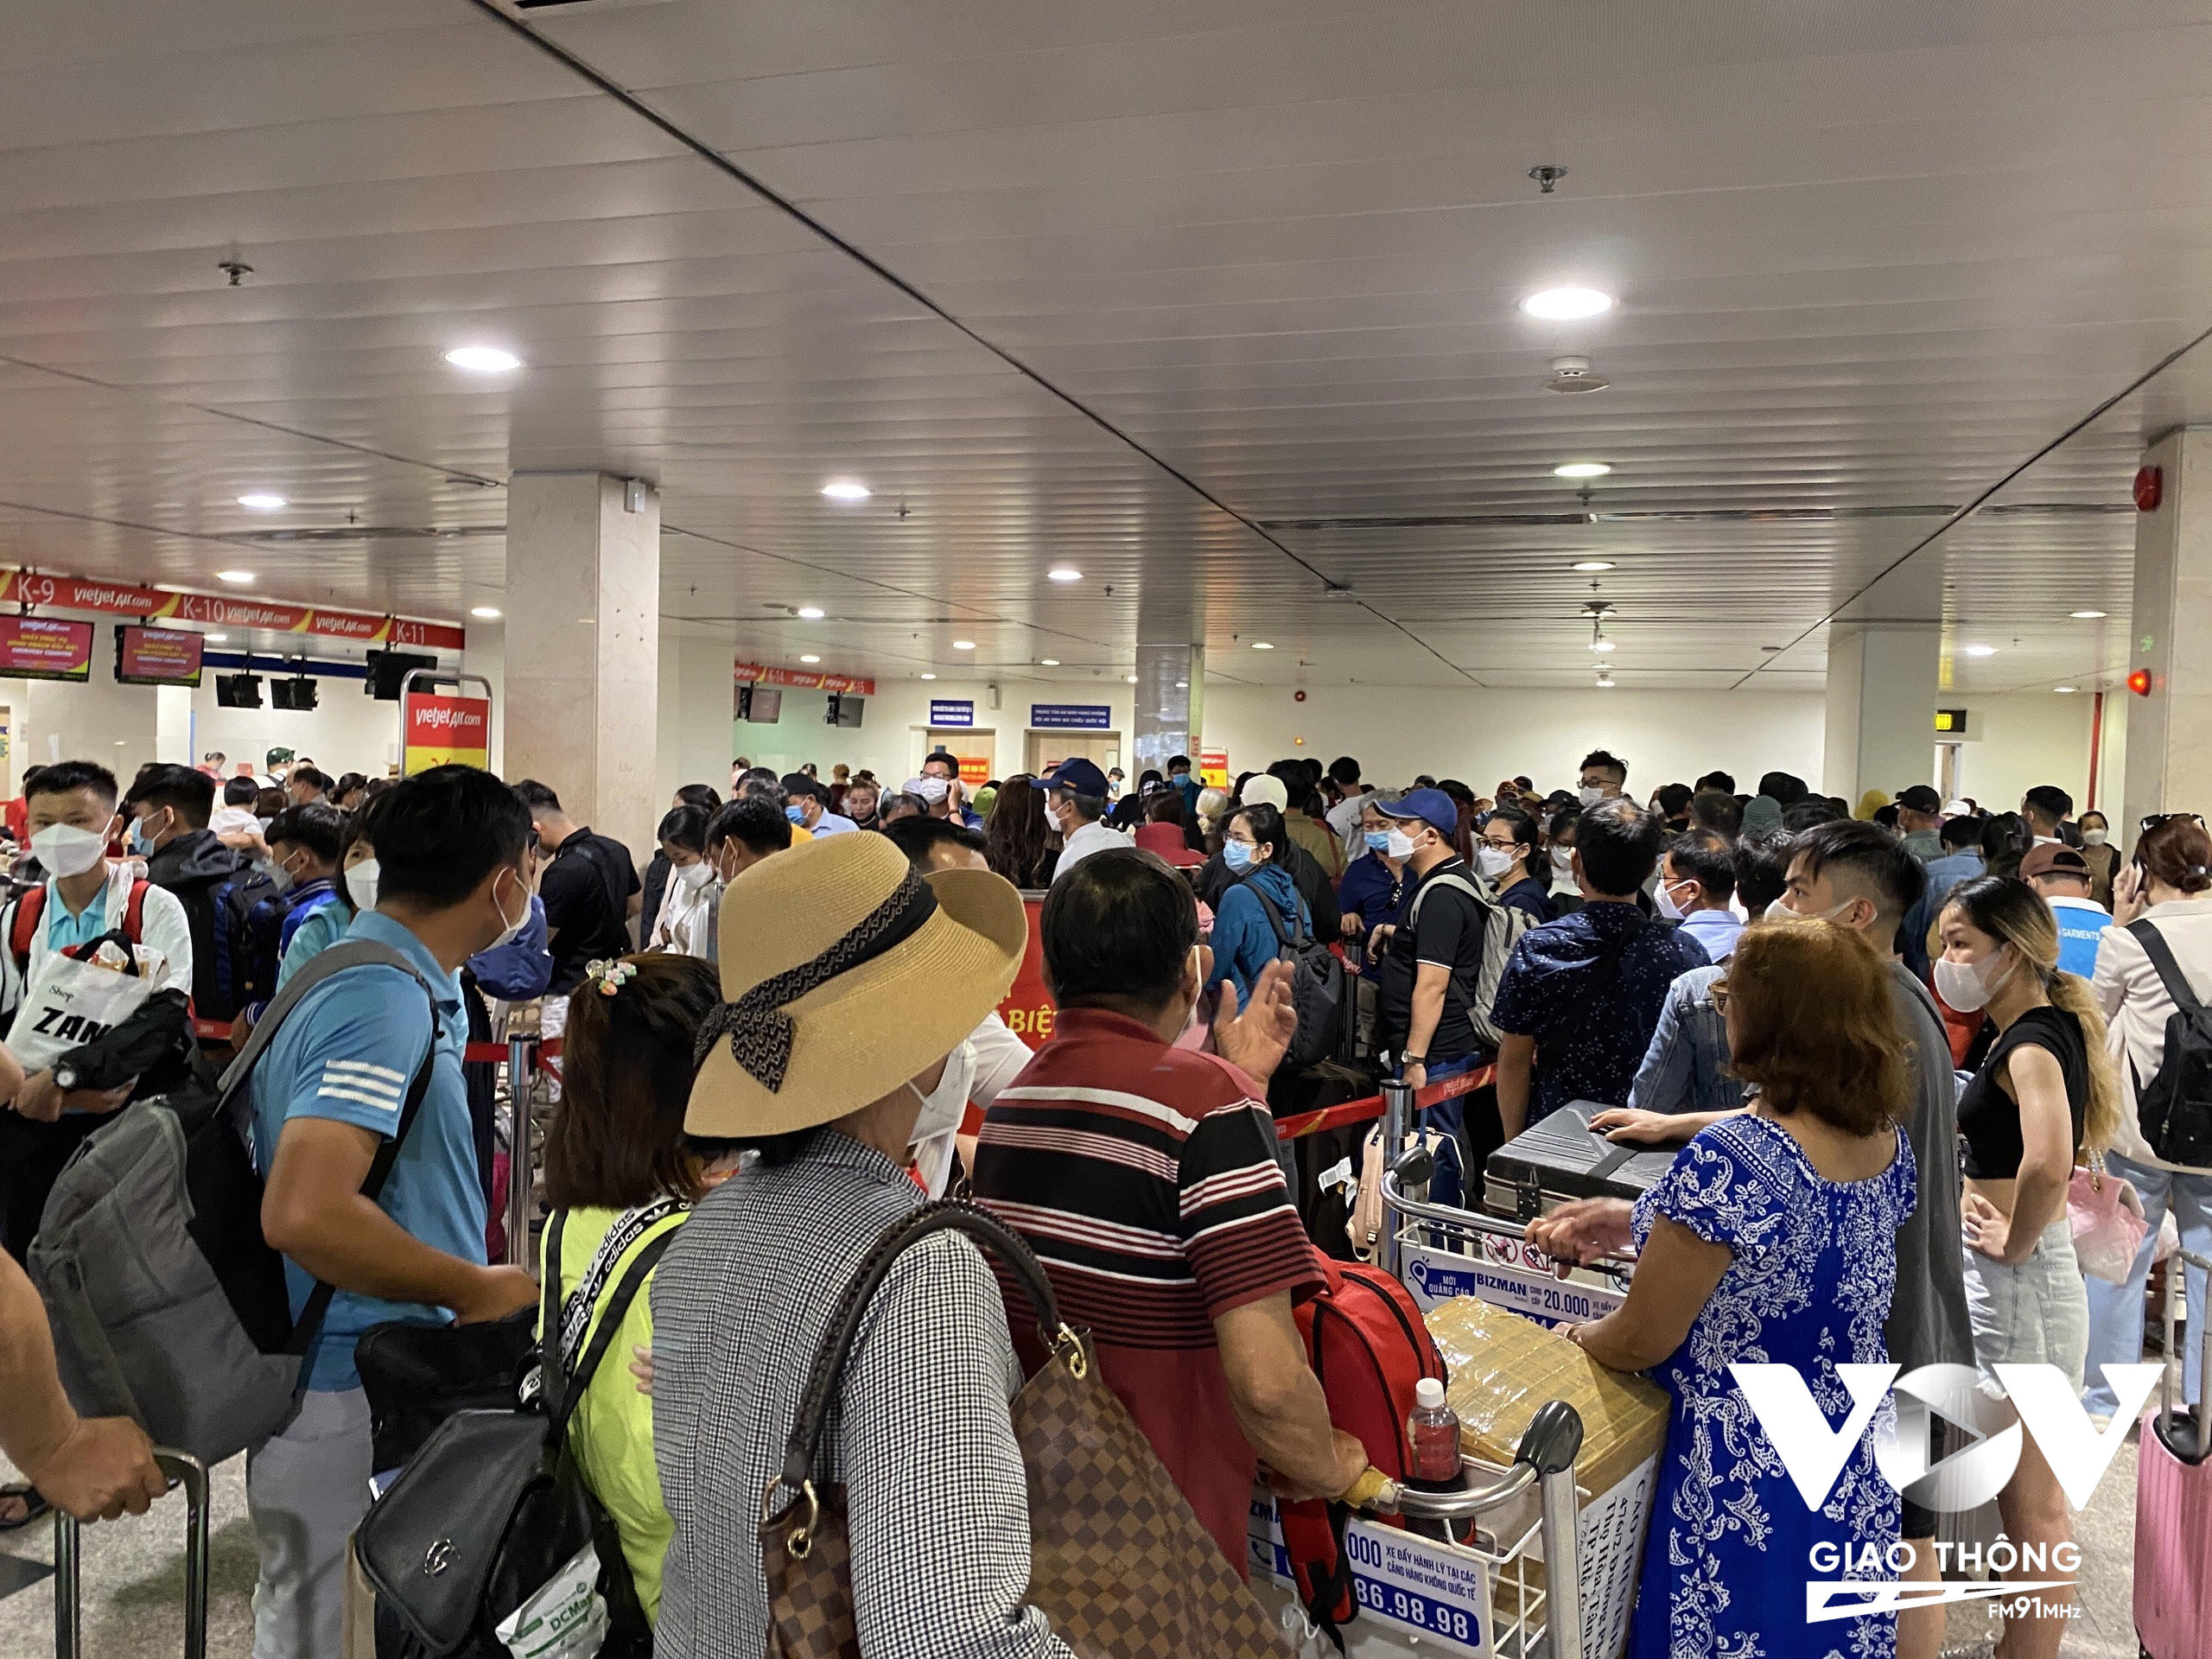 Theo báo cáo của Vietjet, từ sáng 3/6, hệ thống check-in của VJ có lỗi kết nối với hệ thống của Cảng hàng không quốc tế Tân Sơn Nhất (TIA) dẫn đến việc không thể in được thẻ lên tàu và thẻ hành lý.